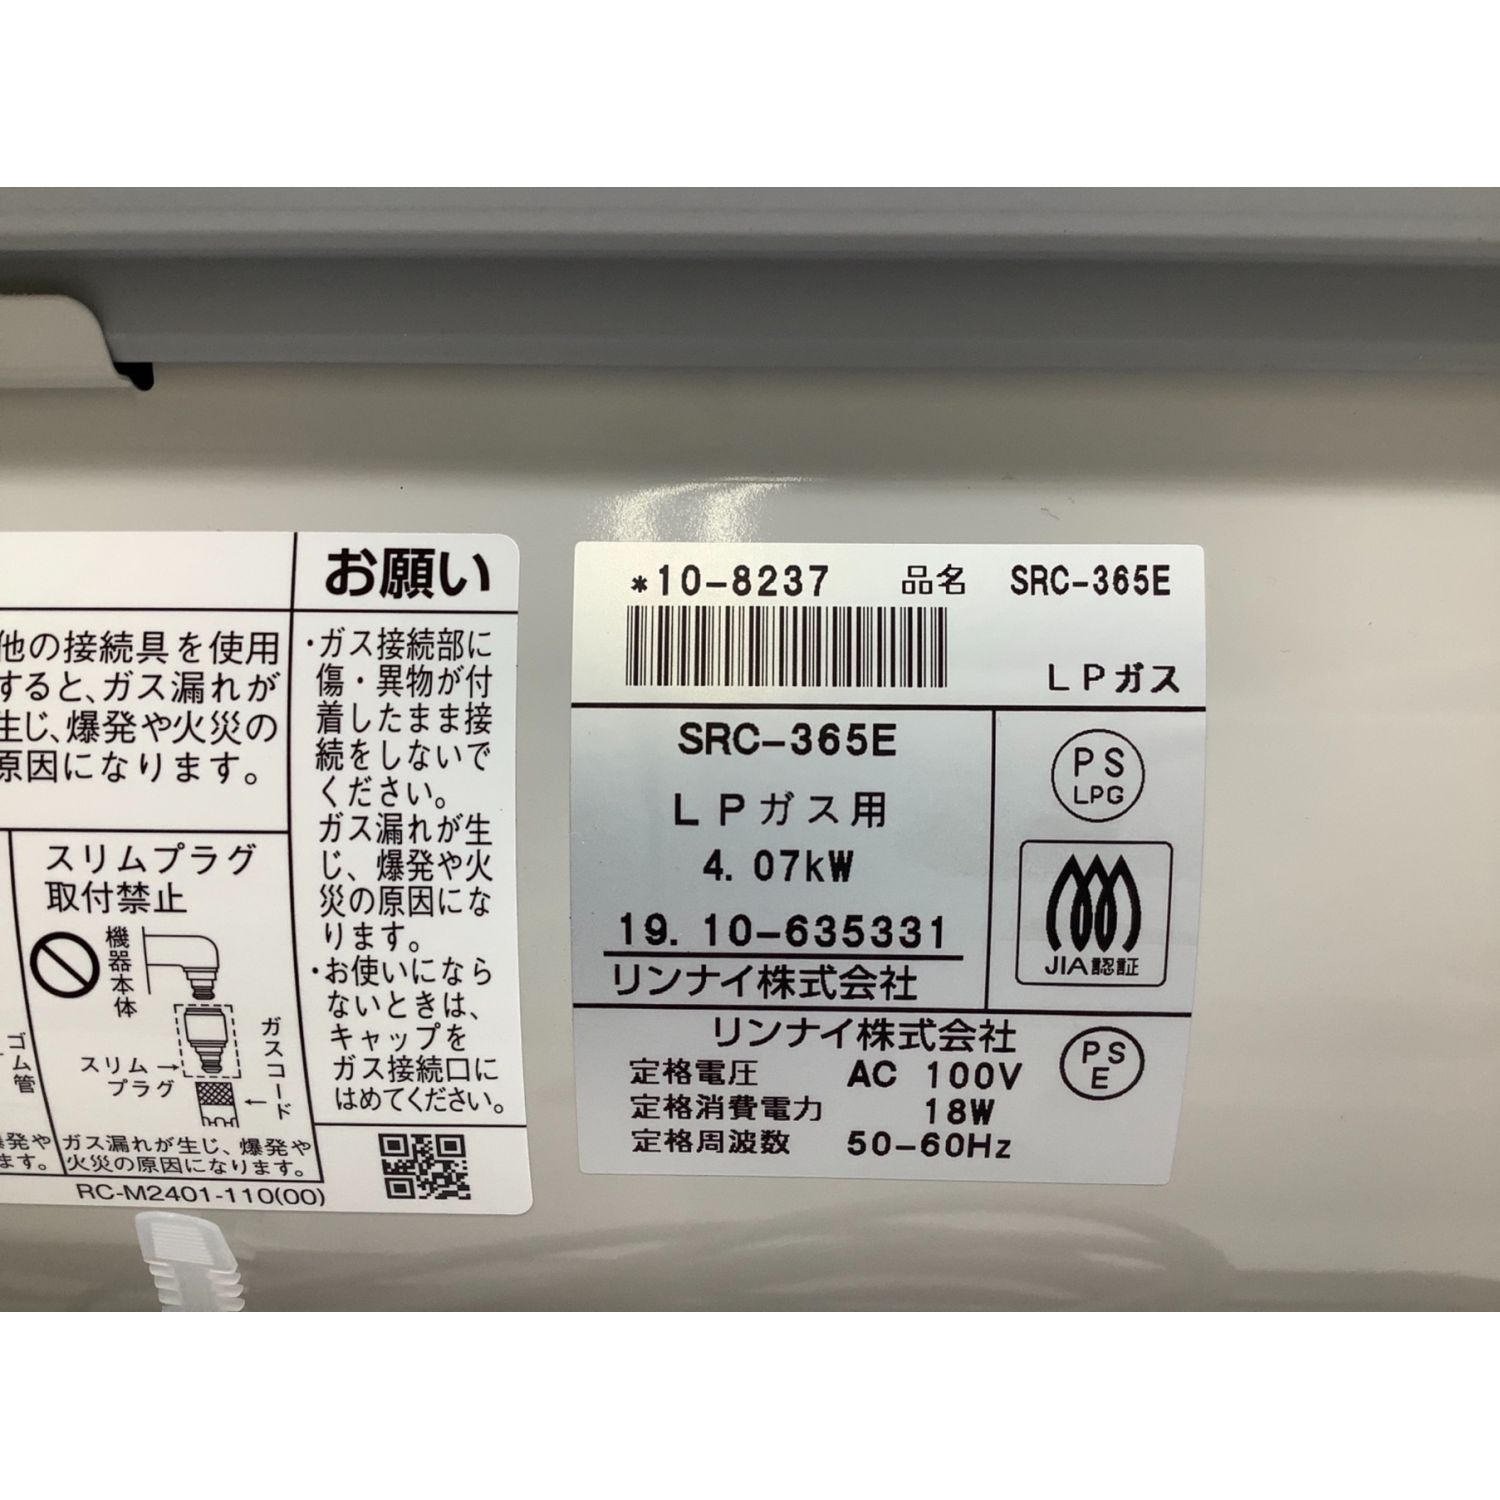 Rinnai (リンナイ) LPガスファンヒーター 11-15畳用 SRC-365E 2019年製